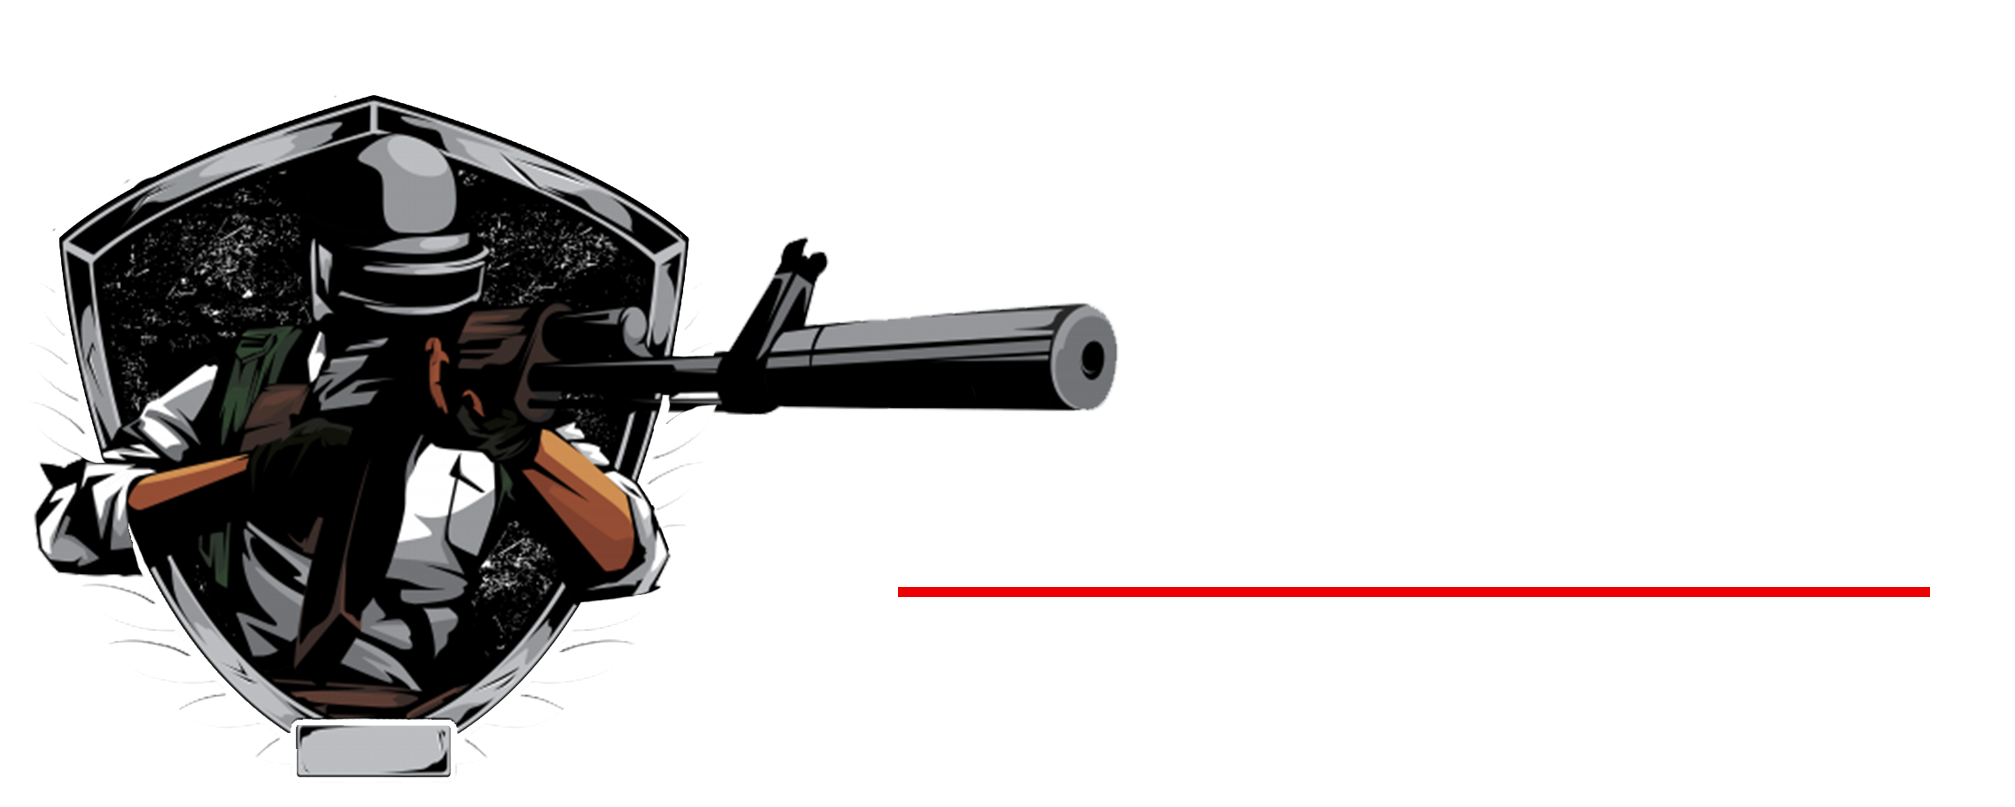 modern minuteman firearms & accessories